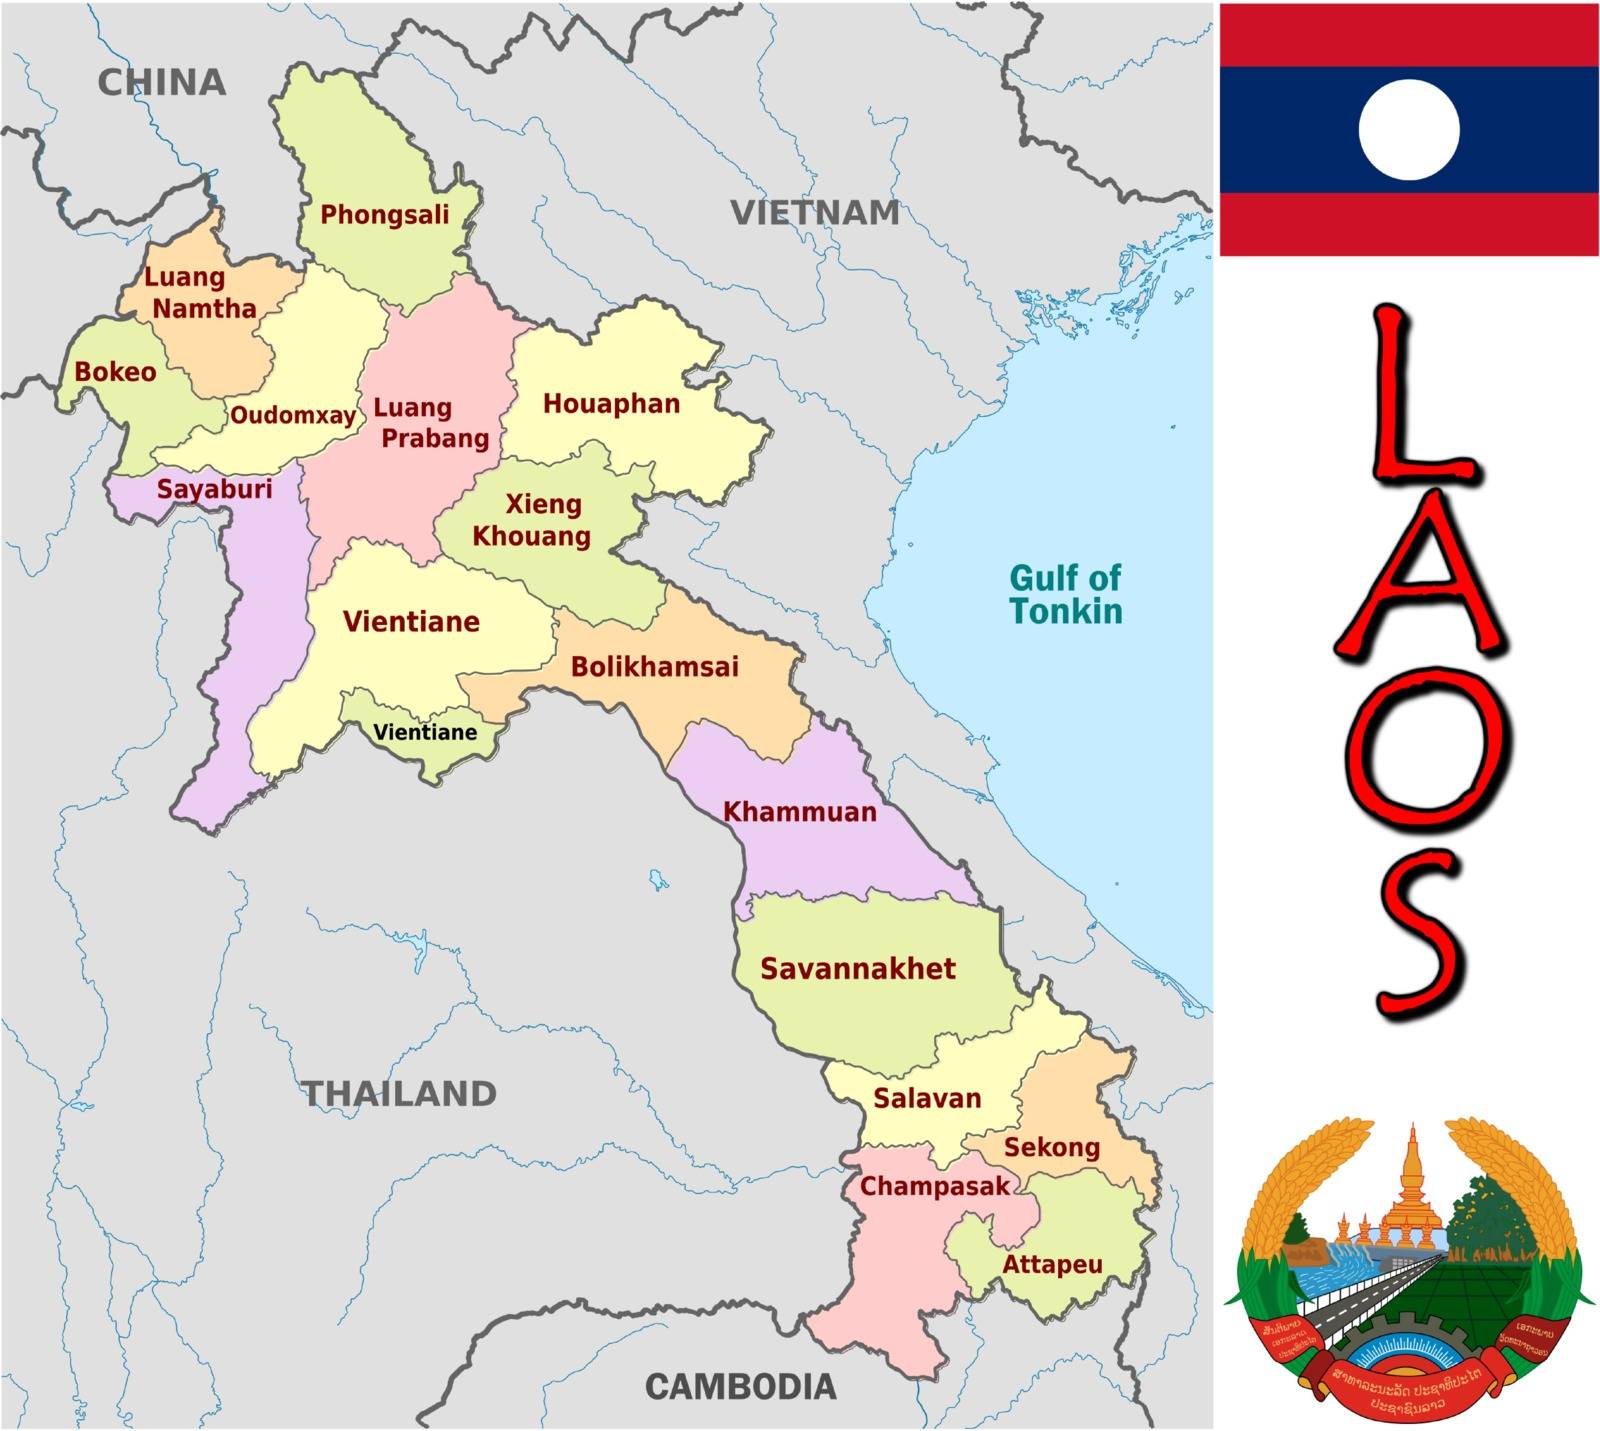 Laos divisions by JRTBurr